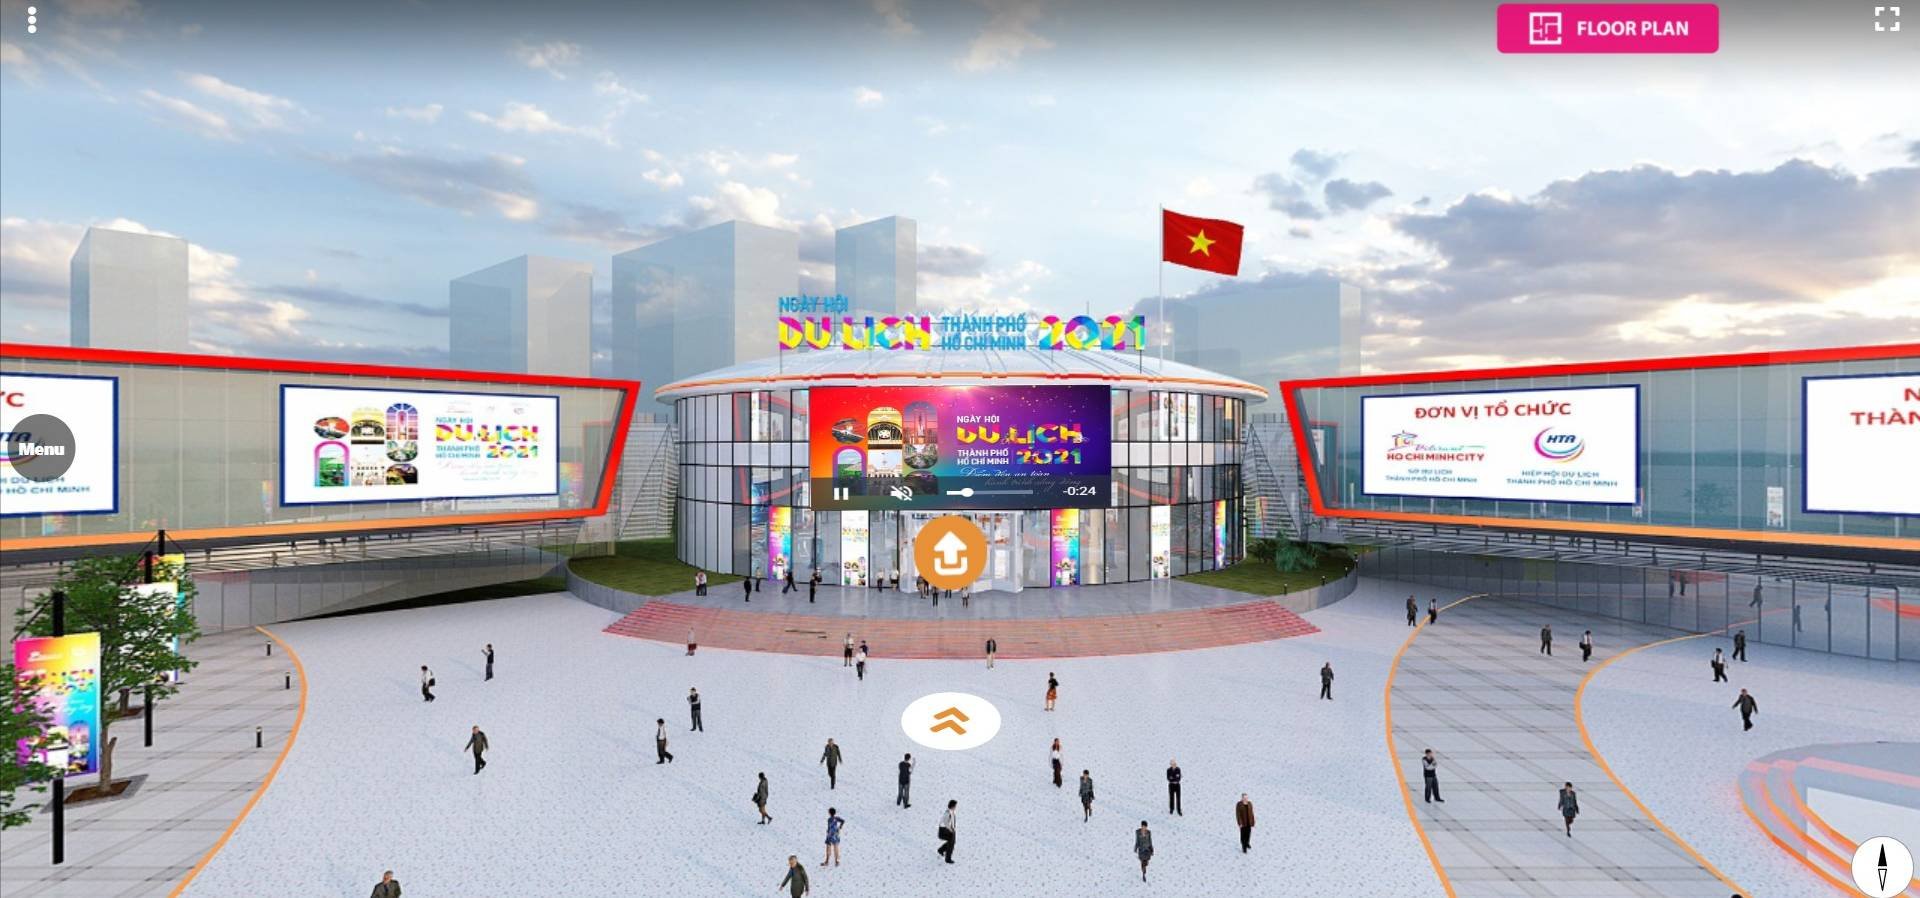 Thiết kế không gian  Ngày hội Du lịch TP. Hồ Chí Minh năm 2021